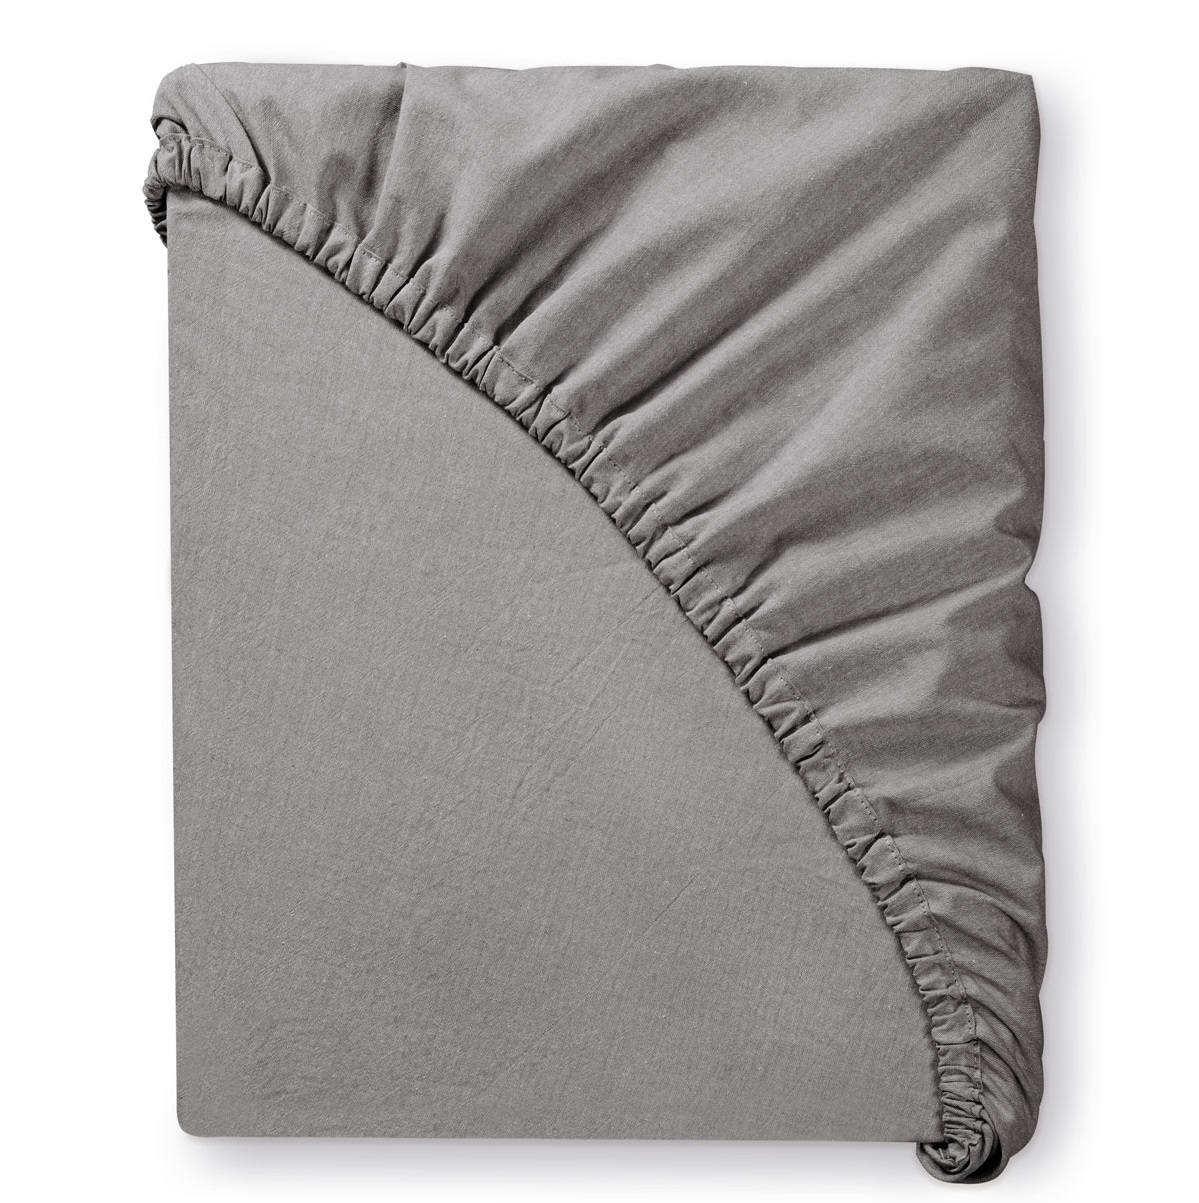 Комплект постельного белья Prime Prive Смоген Двуспальный кинг сайз тёмно-серый, размер Кинг сайз - фото 11